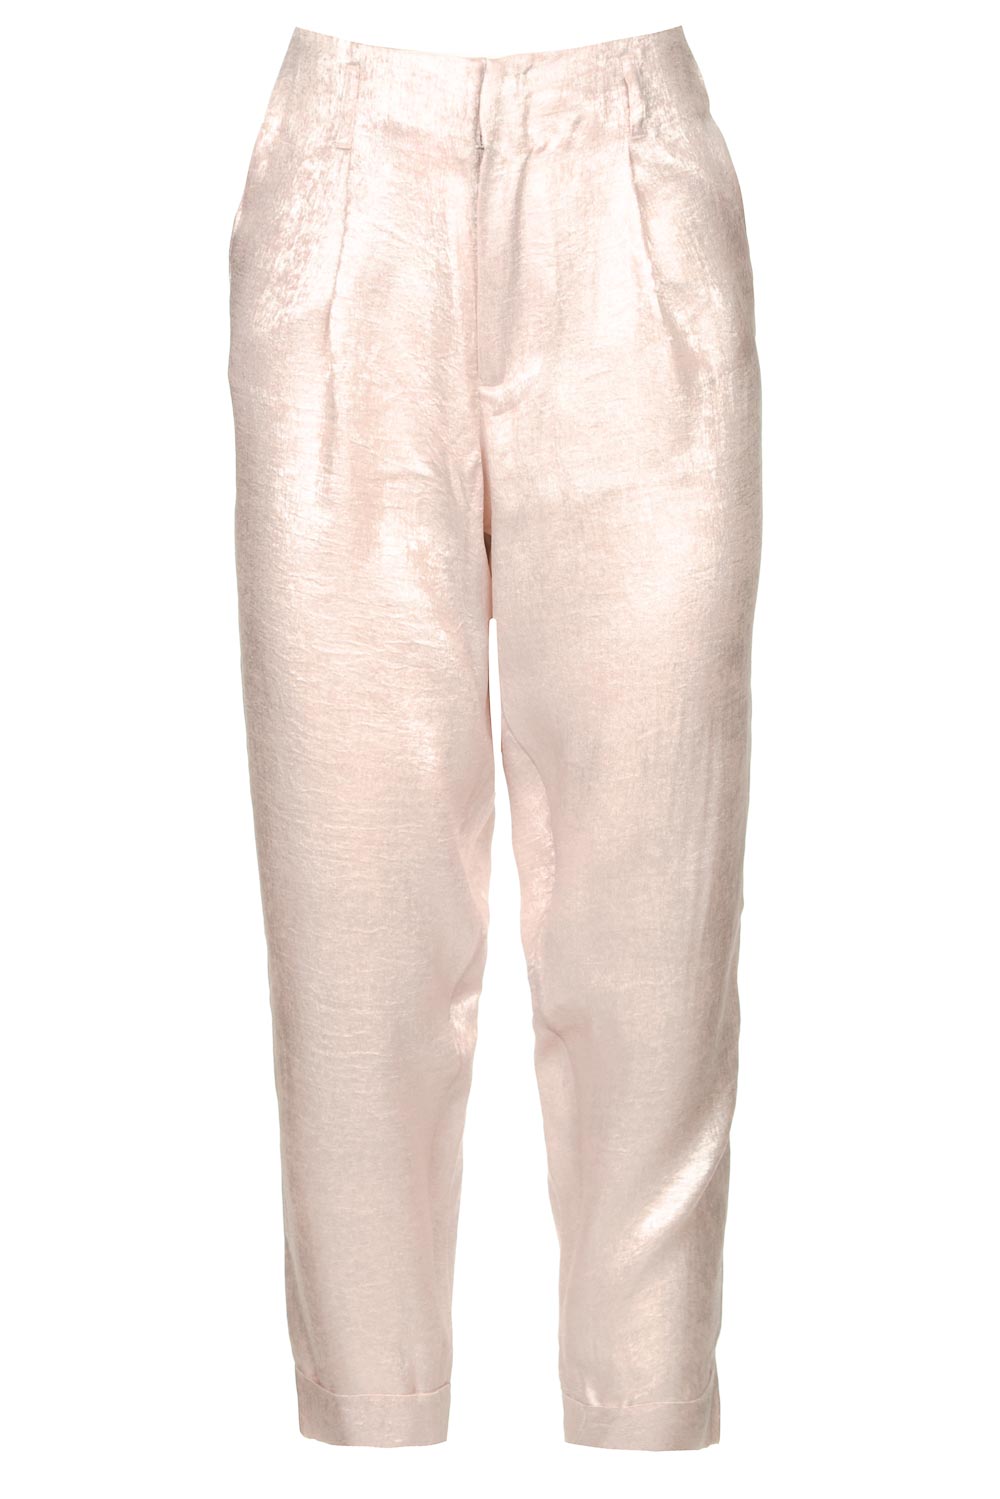 Rabens Saloner Glimmende pantalon Raina roze